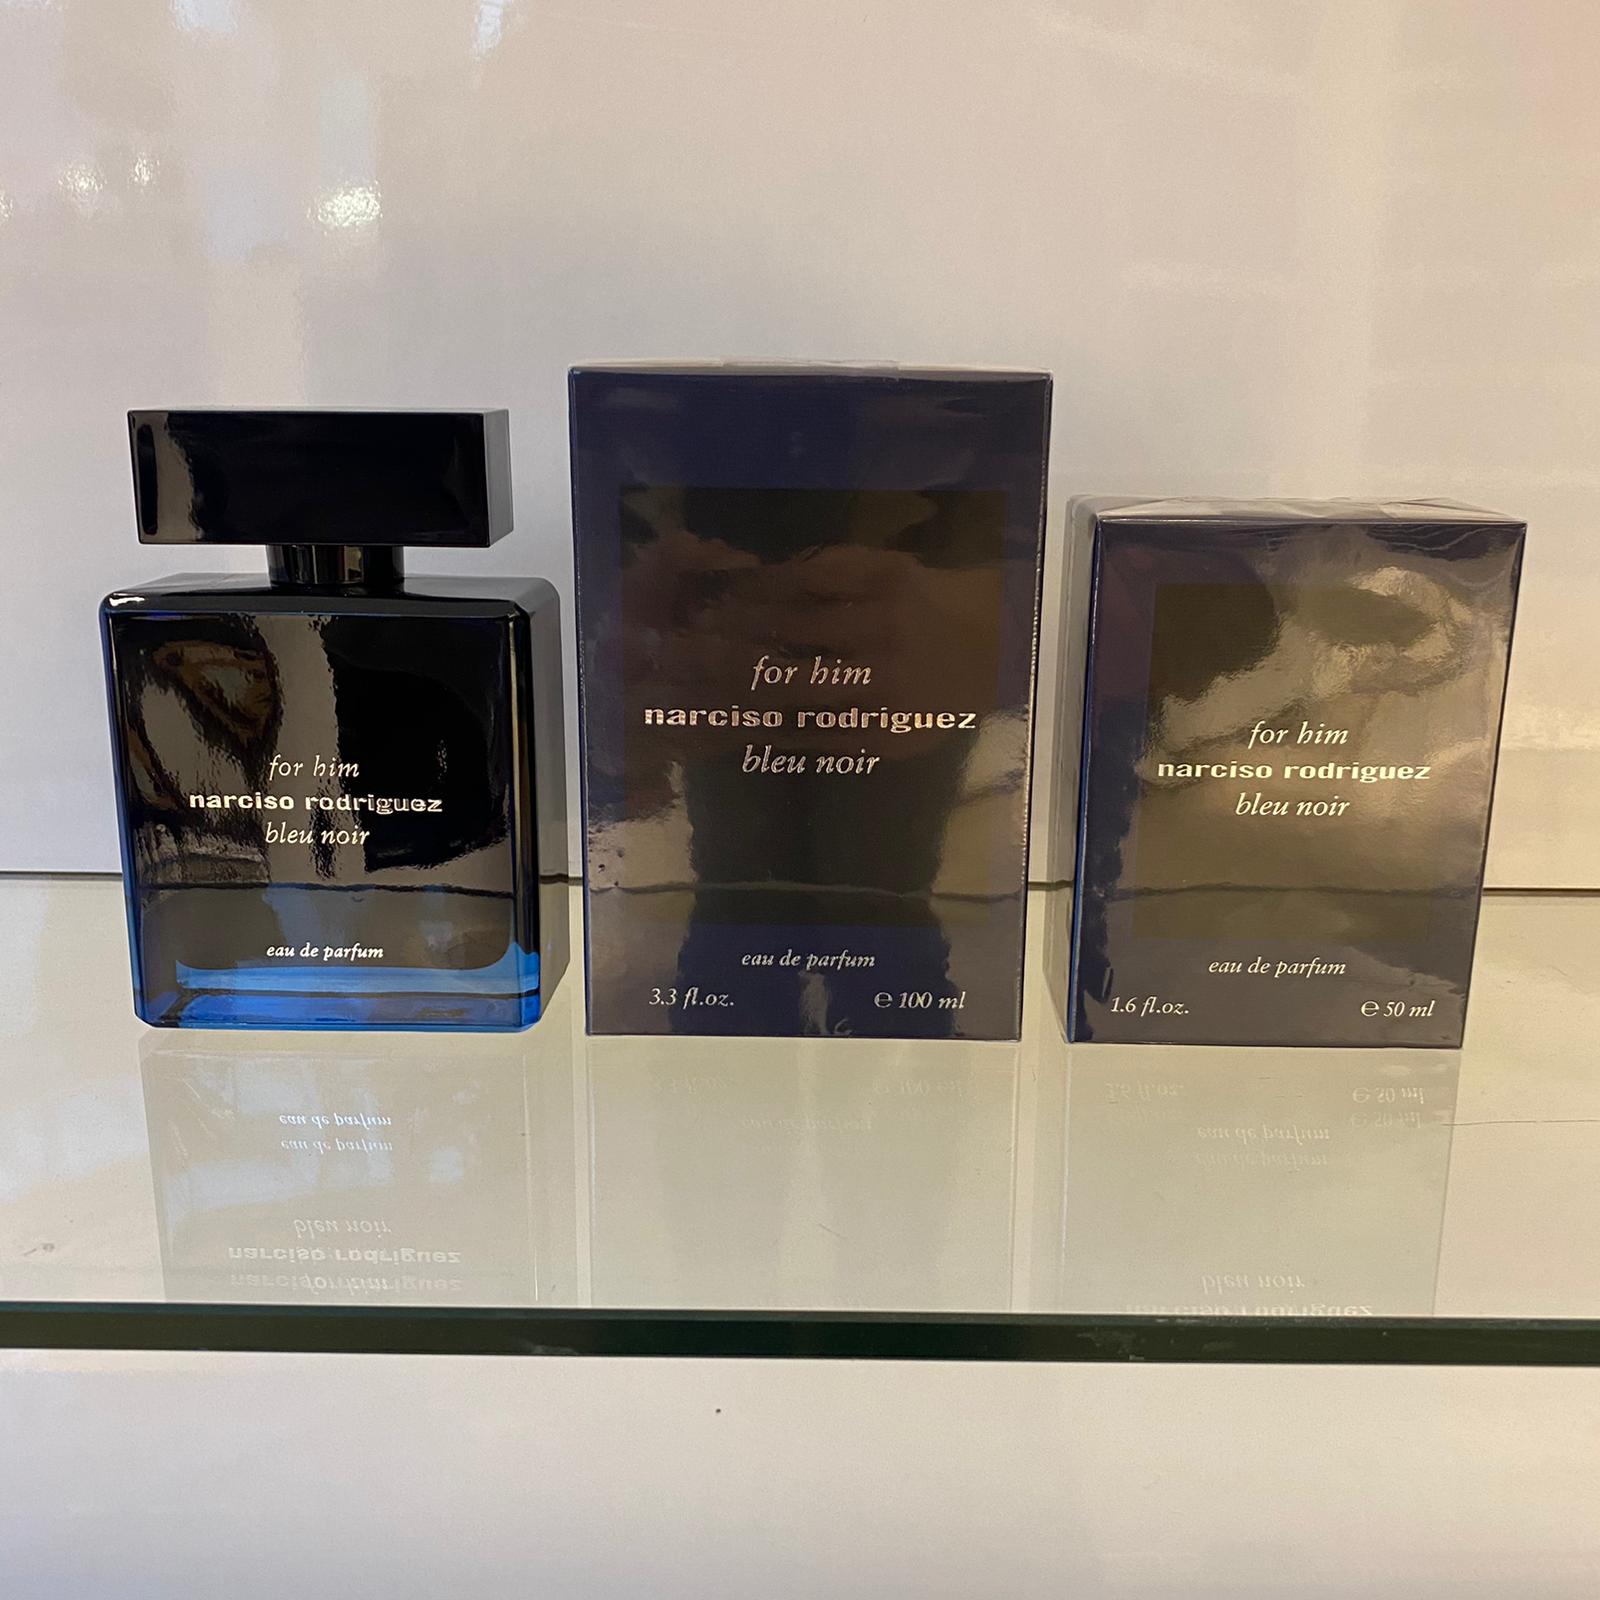 Narciso Rodriquez For Him Bleu Noir Eau de parfum 100 ml